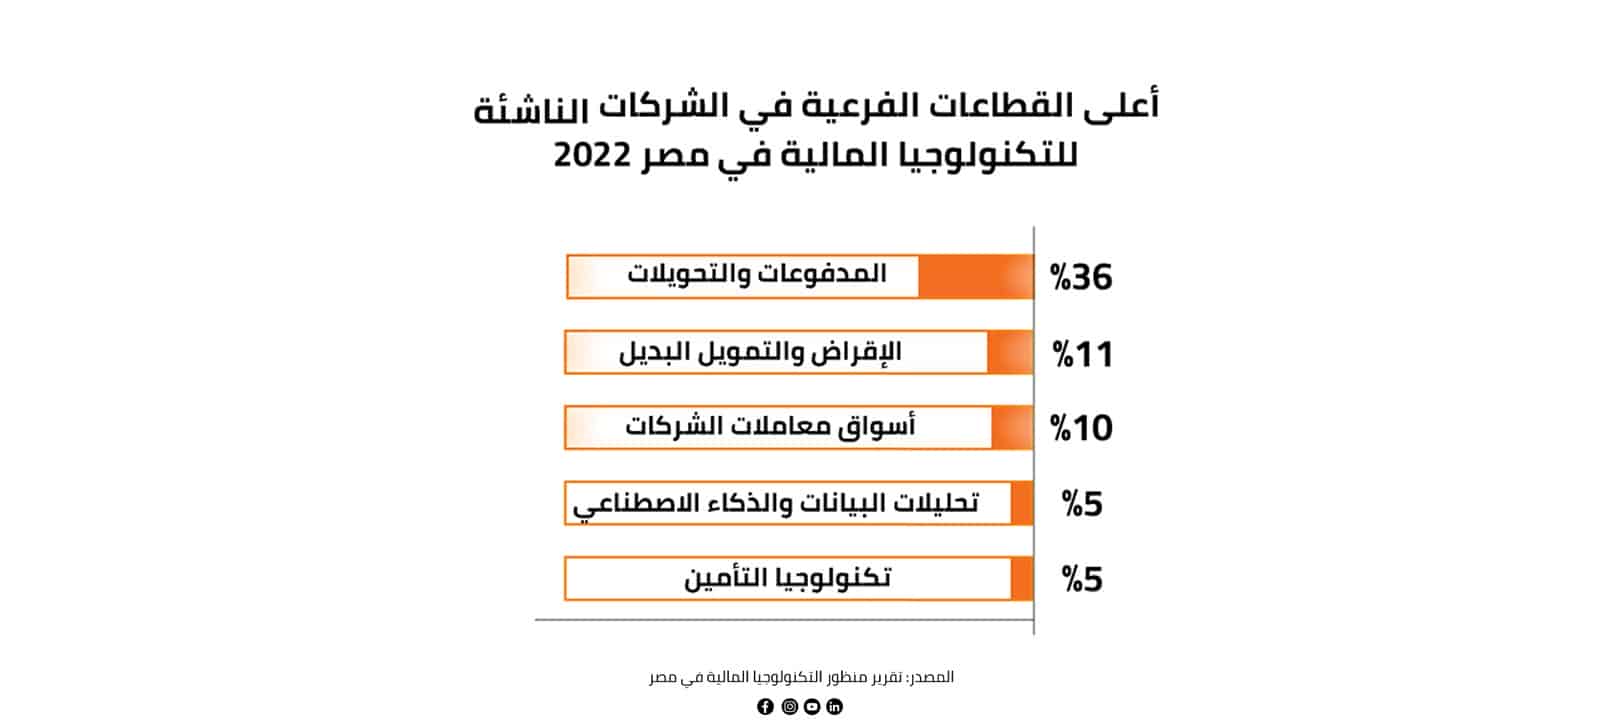 أعلى القطاعات الفرعية الأولية في الشركات الناشئة للتكنولوجيا المالية في مصر 2022  